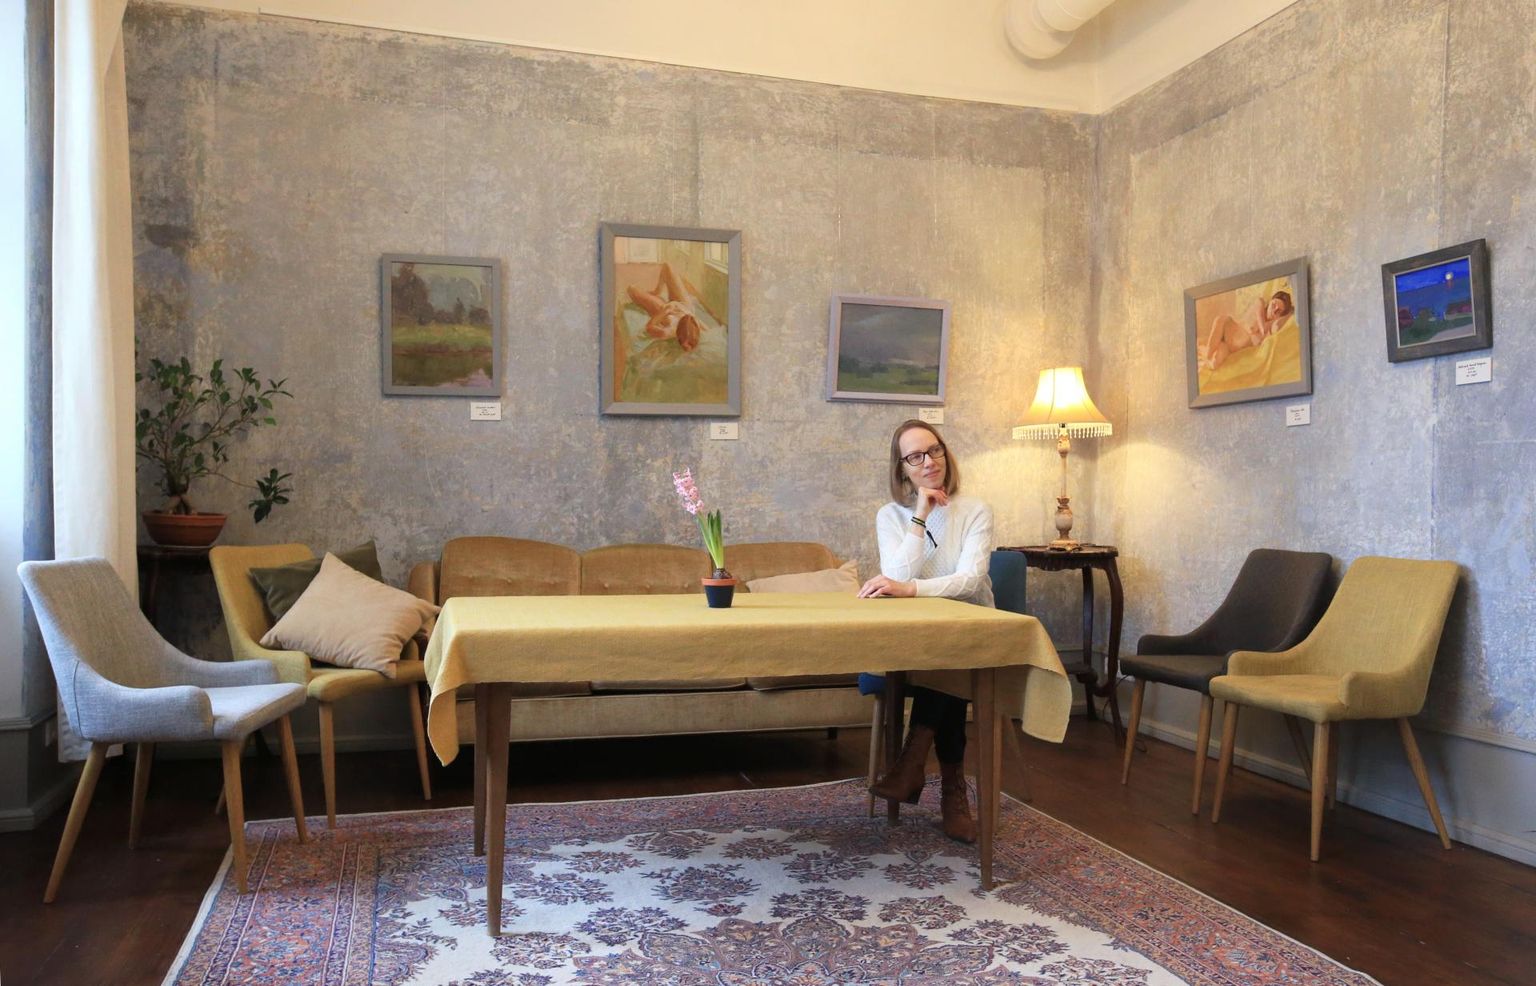 Tea Lemberpuu istub oma maalide juures Tähtvere avatud naistekeskuse toas, mis tundub talle ühtaegu hubane ja kodune, pidulik ja omapärane.